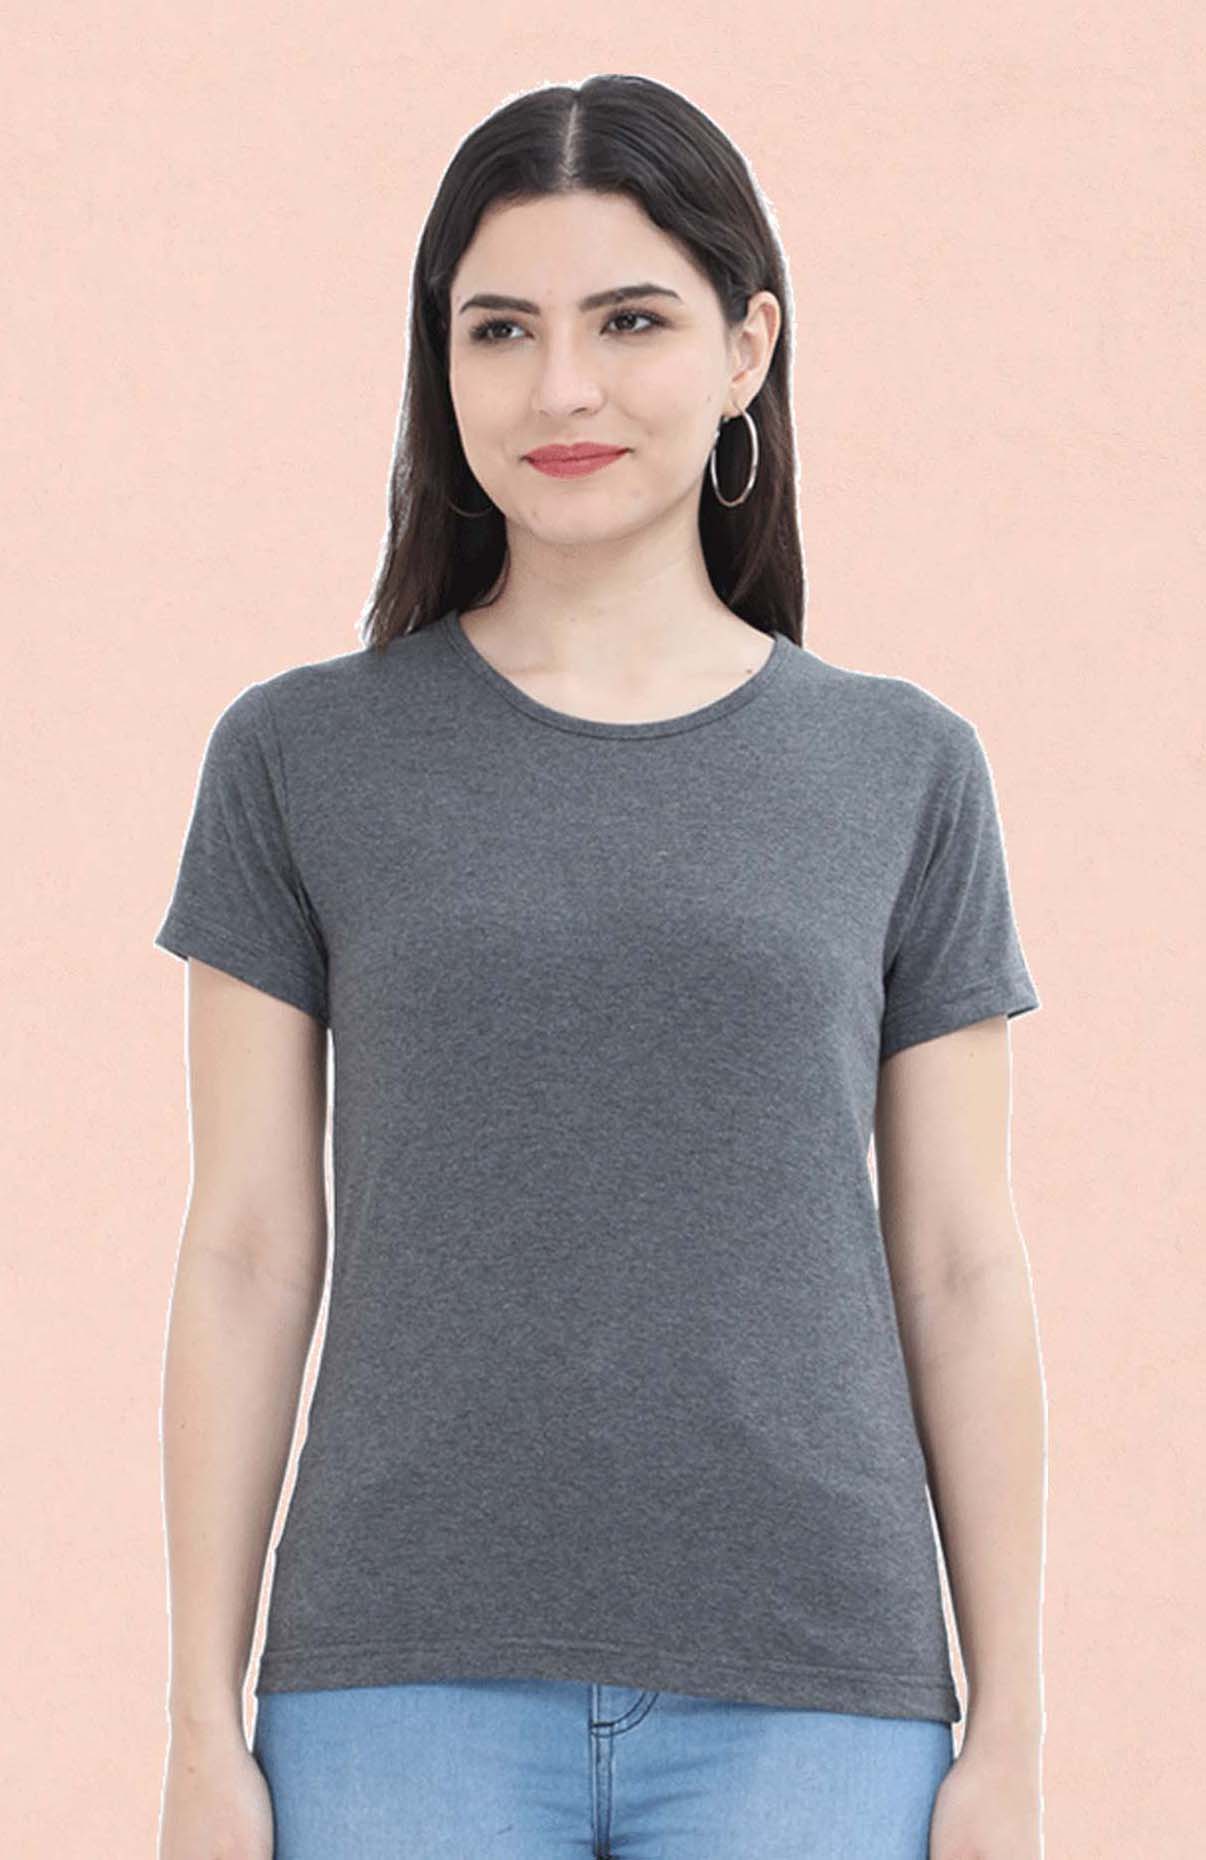 Charcoal melange plain t shirt for women